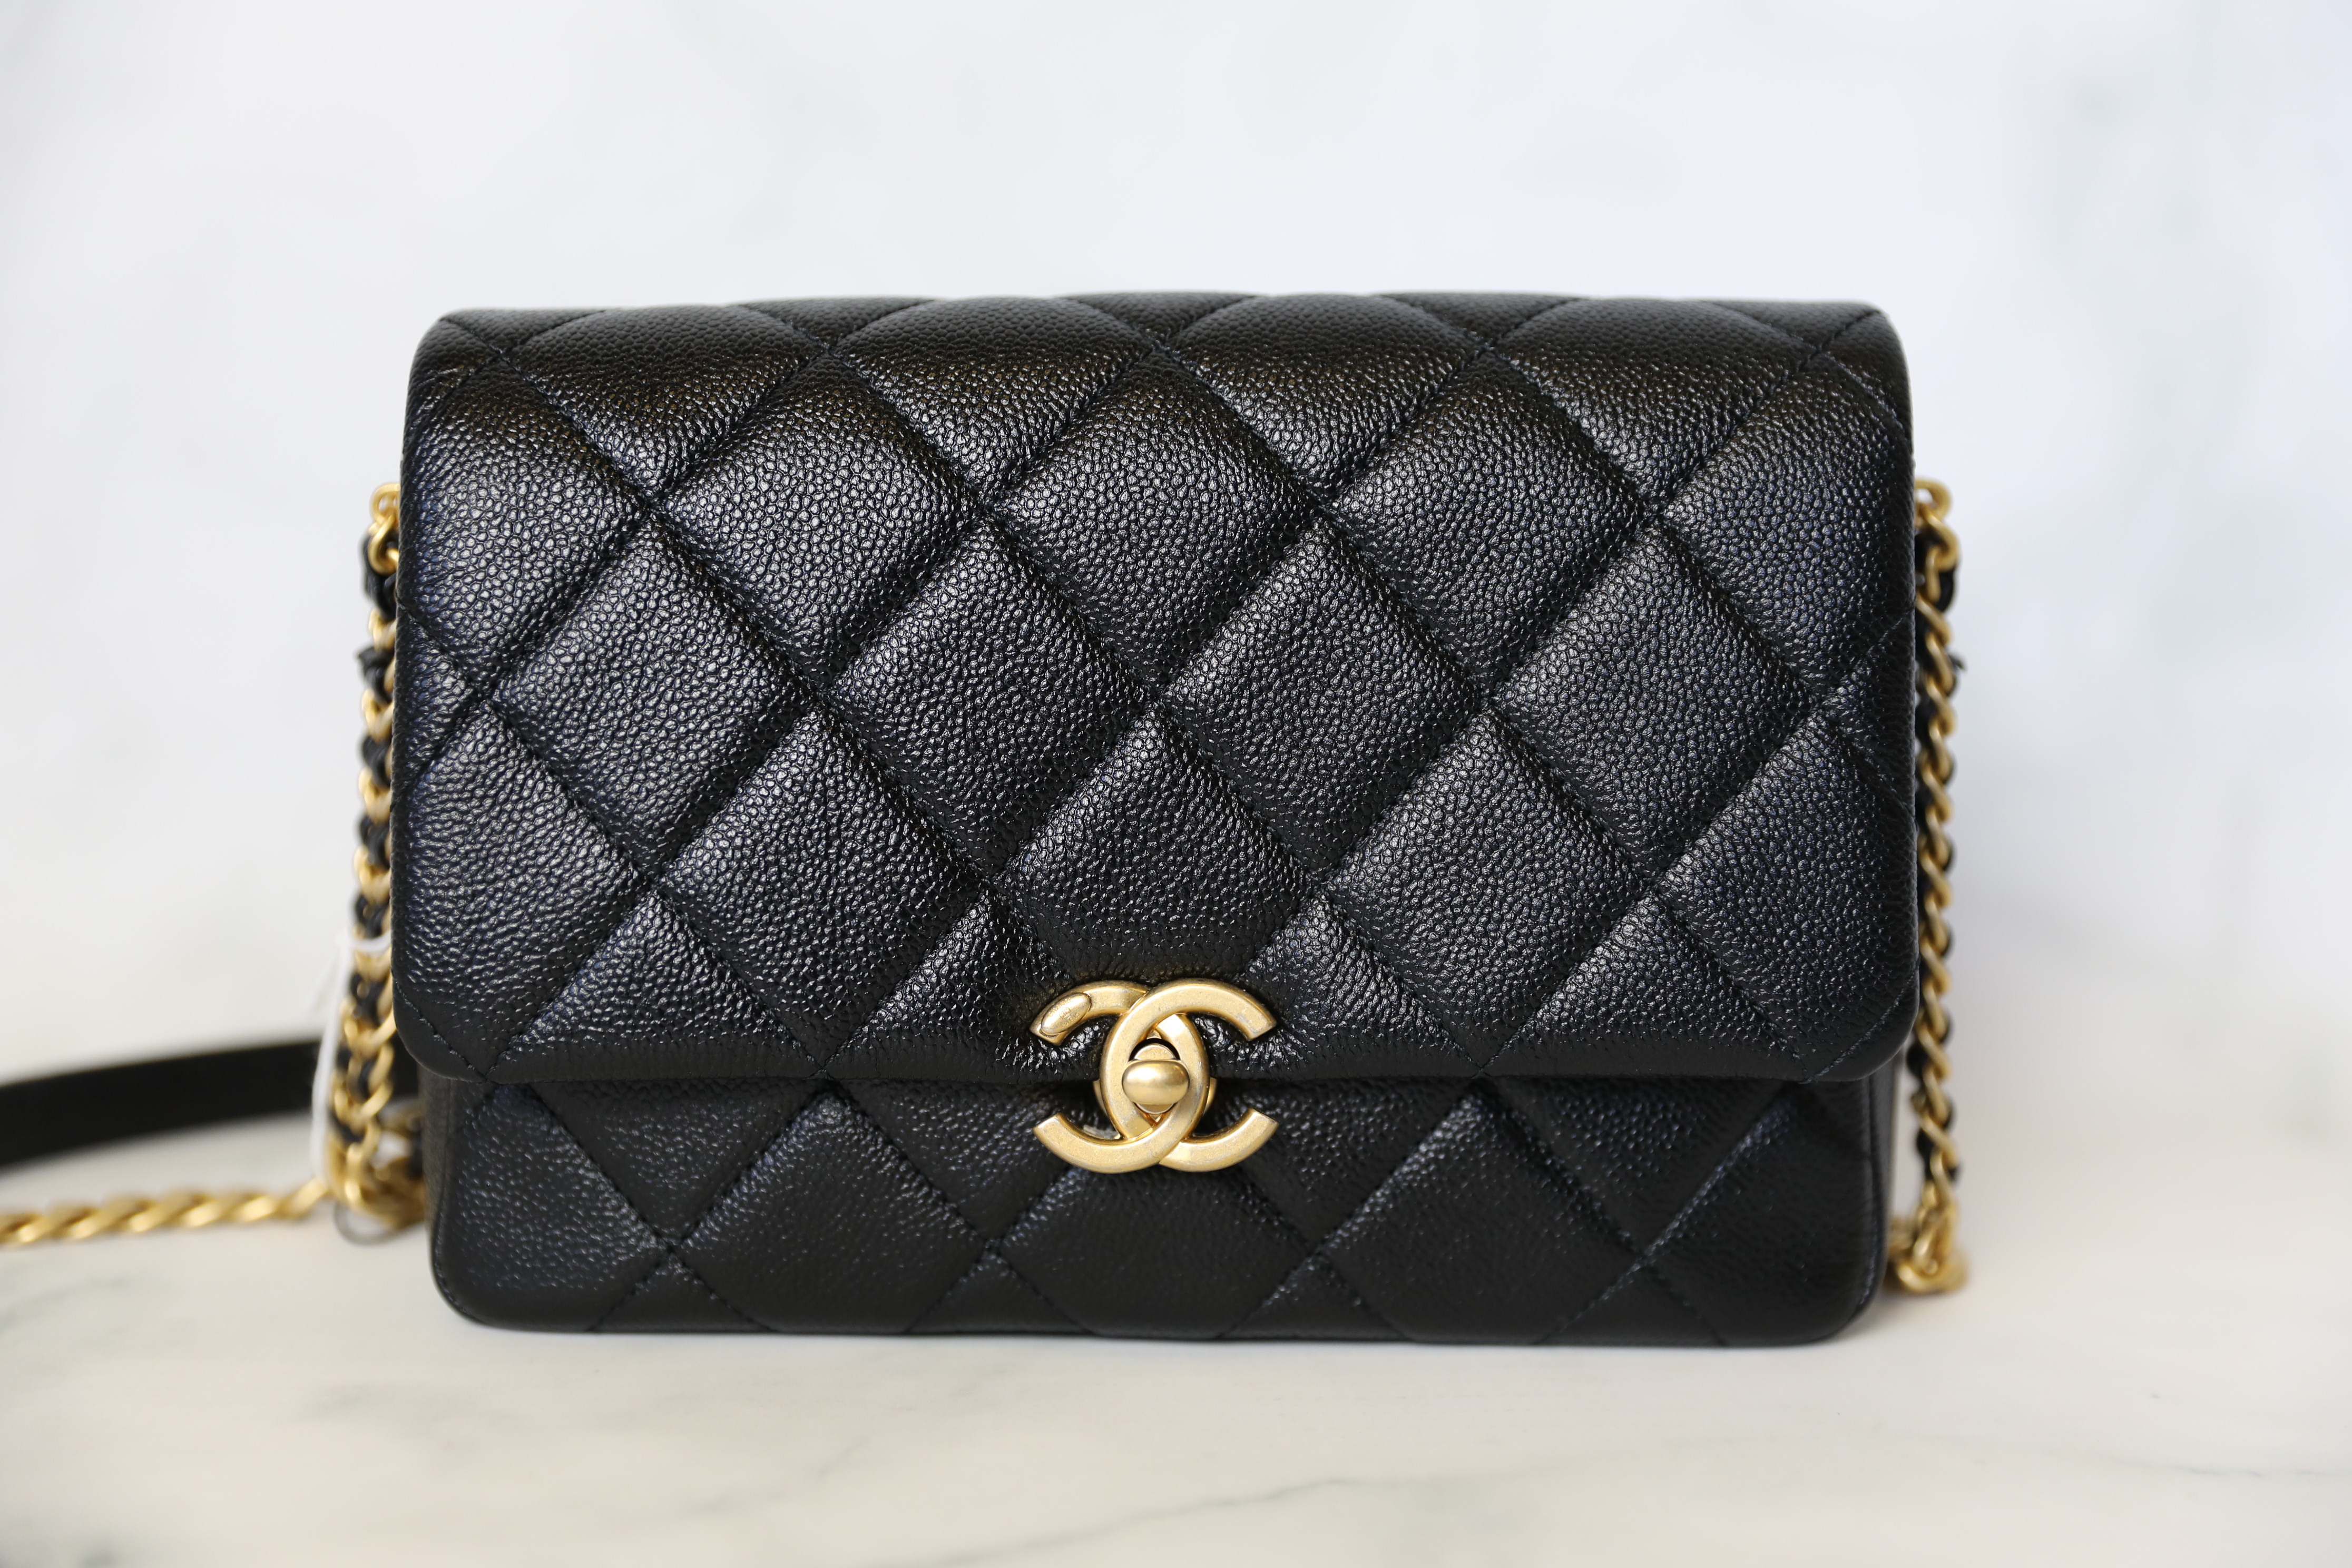 Chanel Melody Small, Black Caviar with Gold Hardware, New in Box WA001 -  Julia Rose Boston